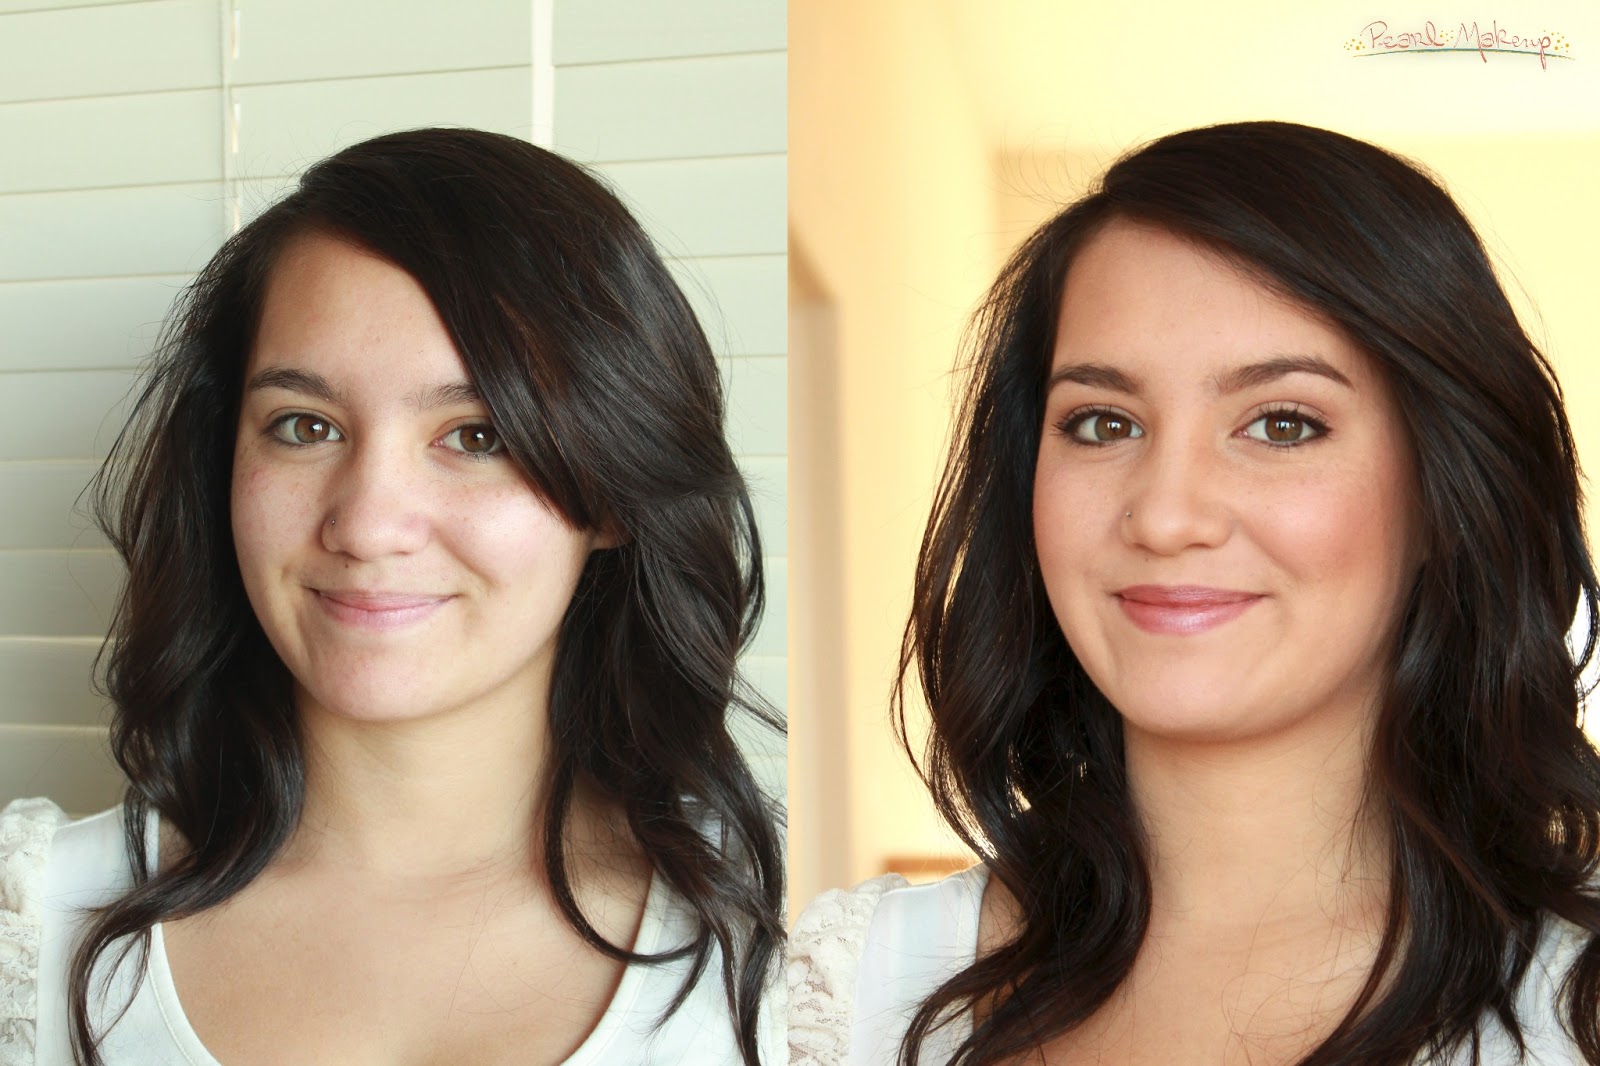  Natural  Looking Makeup  Before  And After  Mugeek Vidalondon